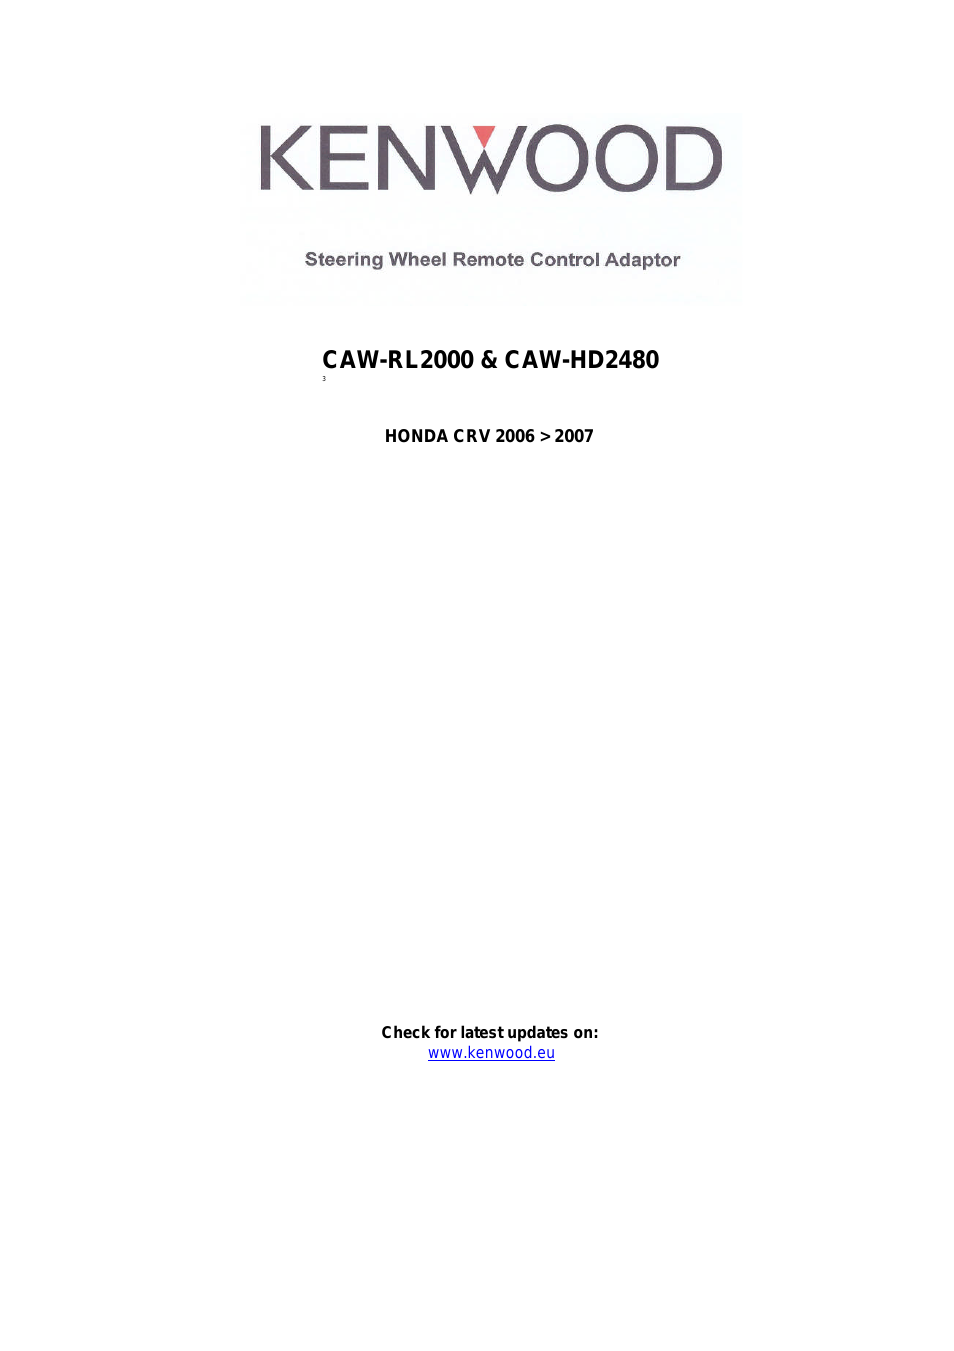 CAW-HD2480